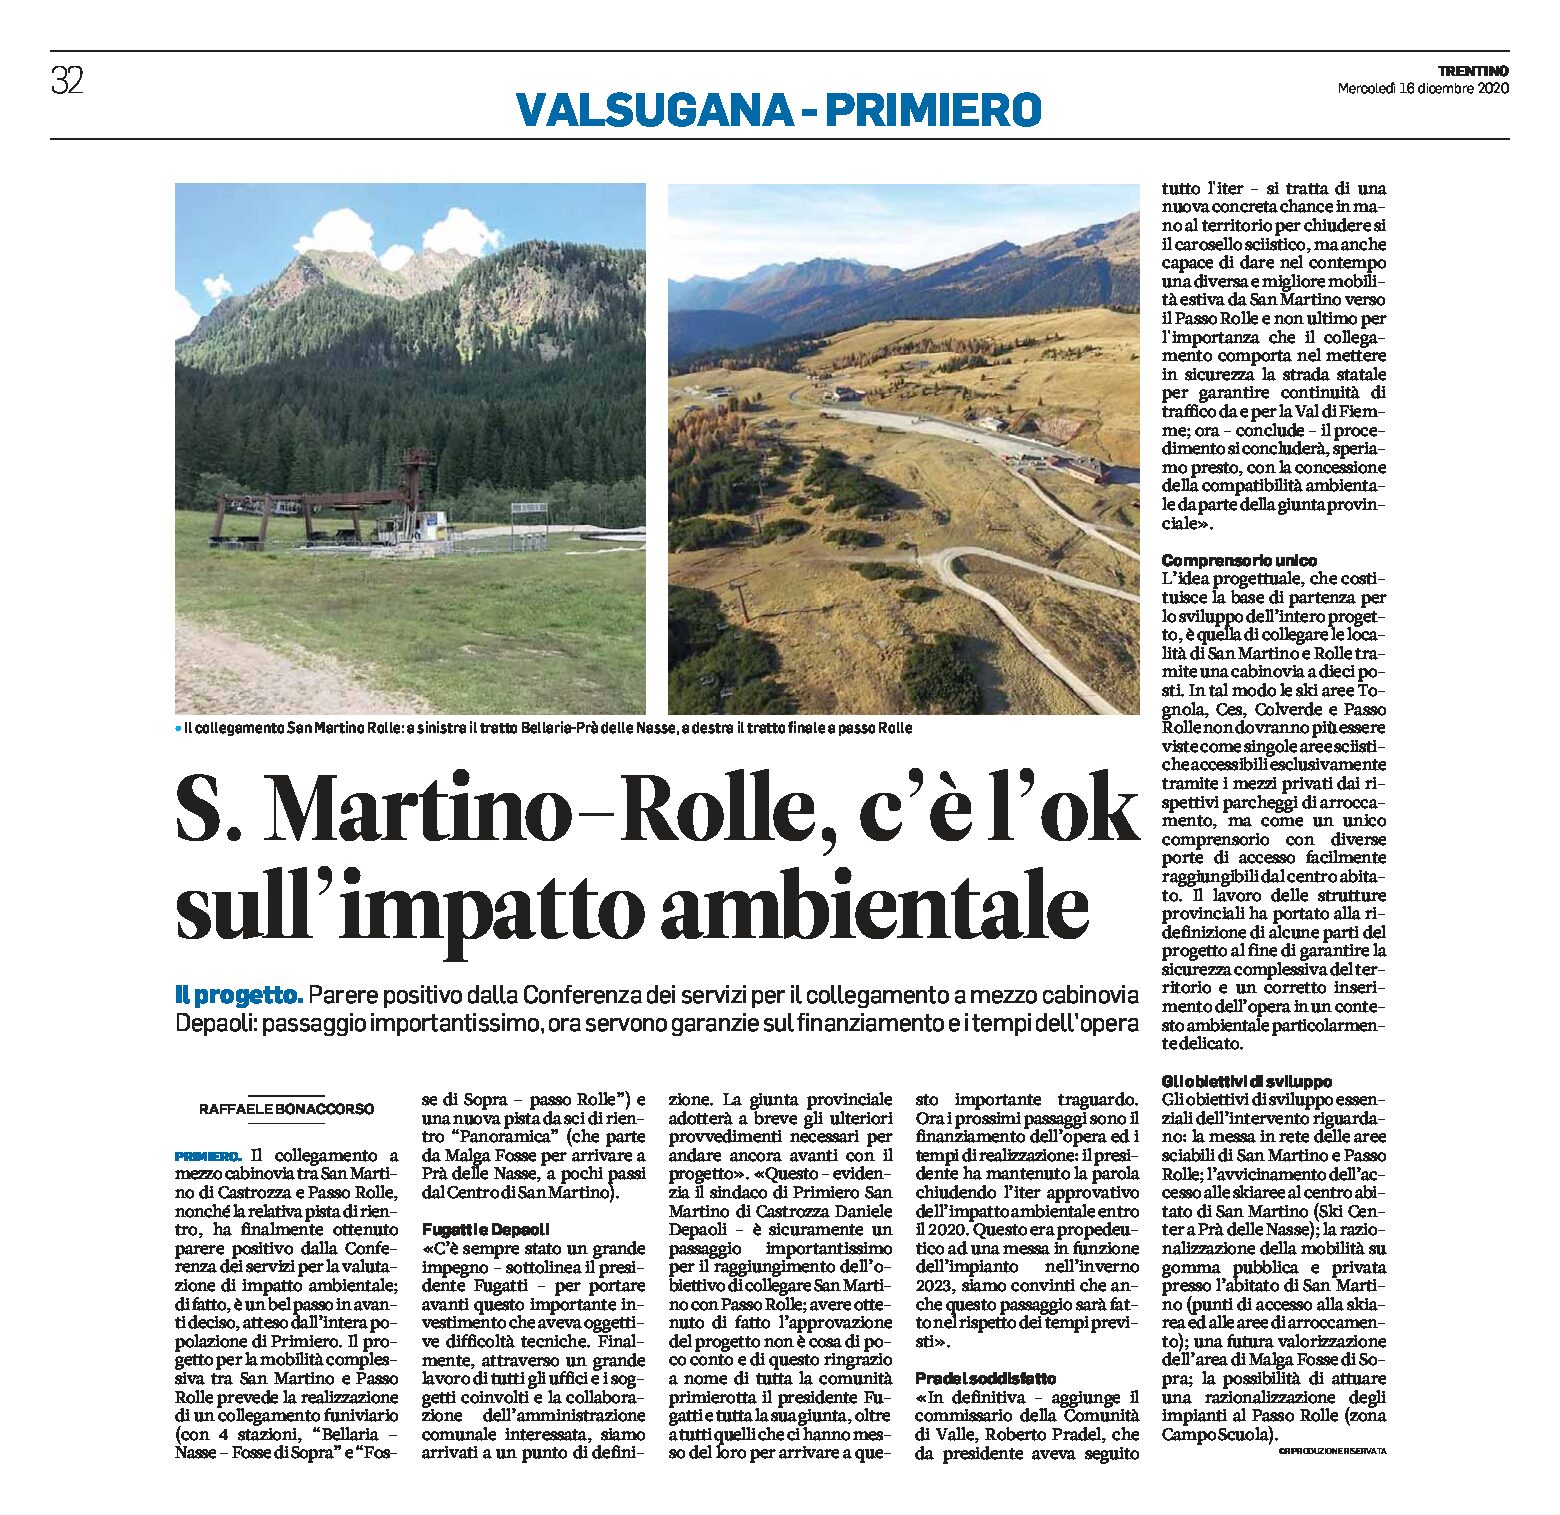 Rolle-San Martino: c’è l’ok sull’impatto ambientale